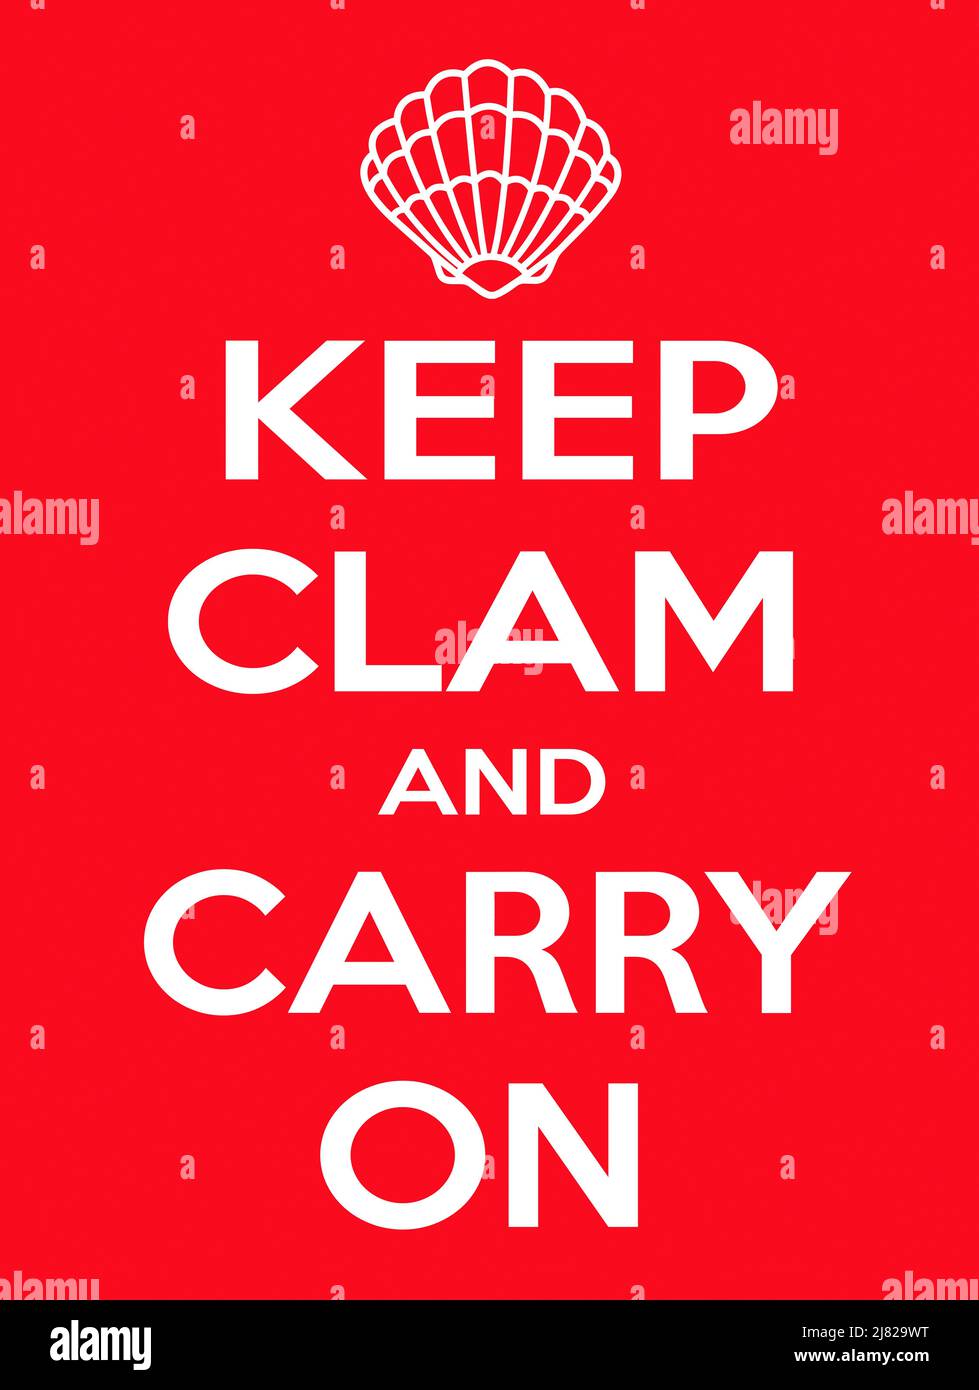 La légende « Keep Clam and Carry On » avec un motif de palourdes remplaçant la couronne, sur fond rouge Banque D'Images